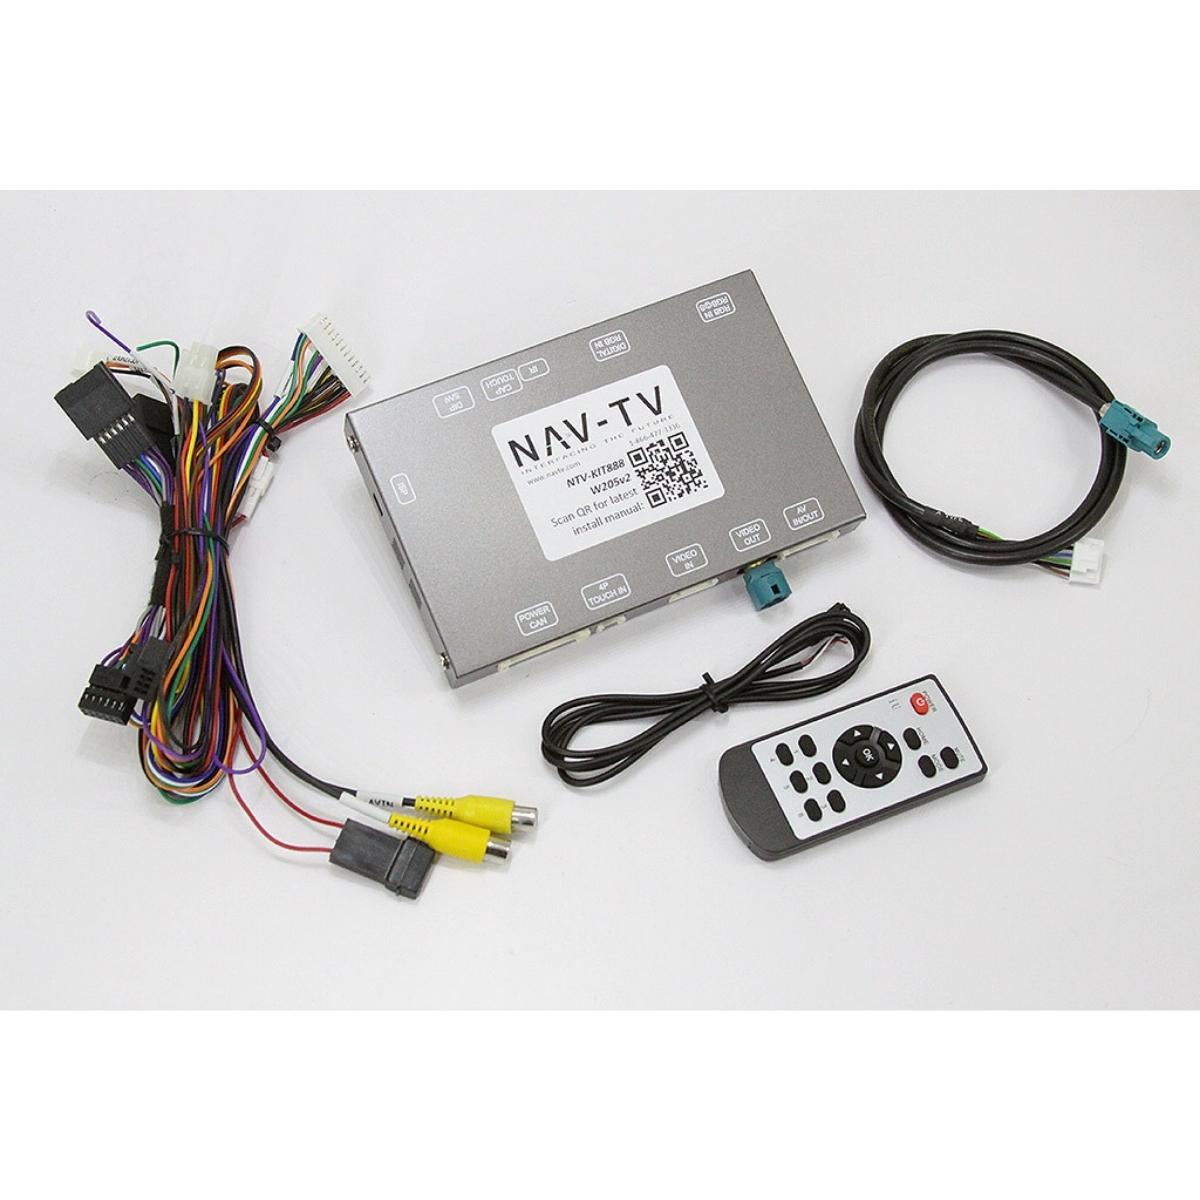 NAV-TV Kit 888 W205 v2